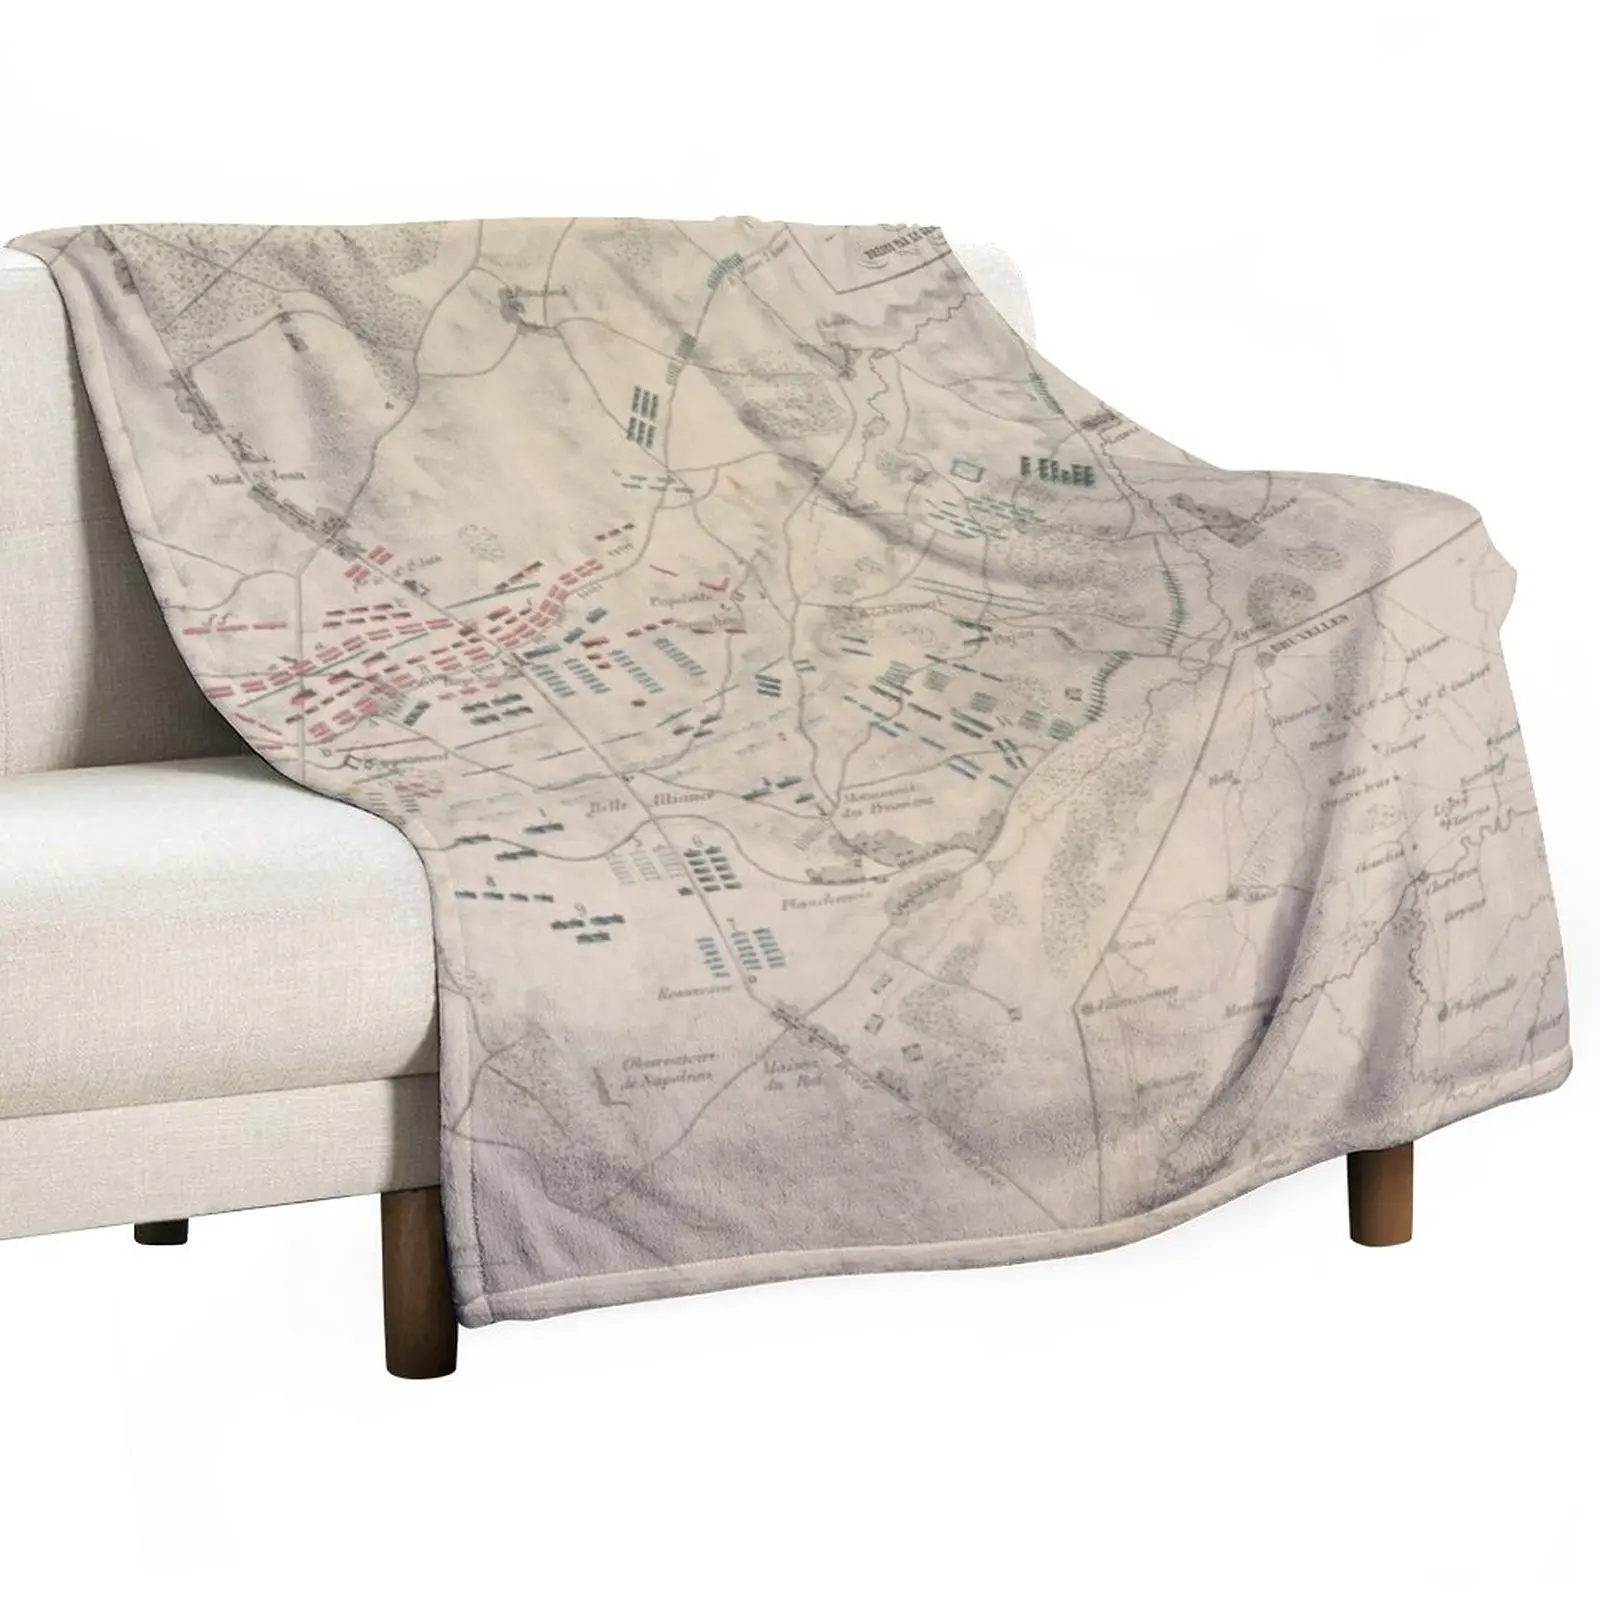 

Vintage Battle of Waterloo Map (1846) Throw Blanket throw blanket for sofa Polar blanket Soft Bed Blankets